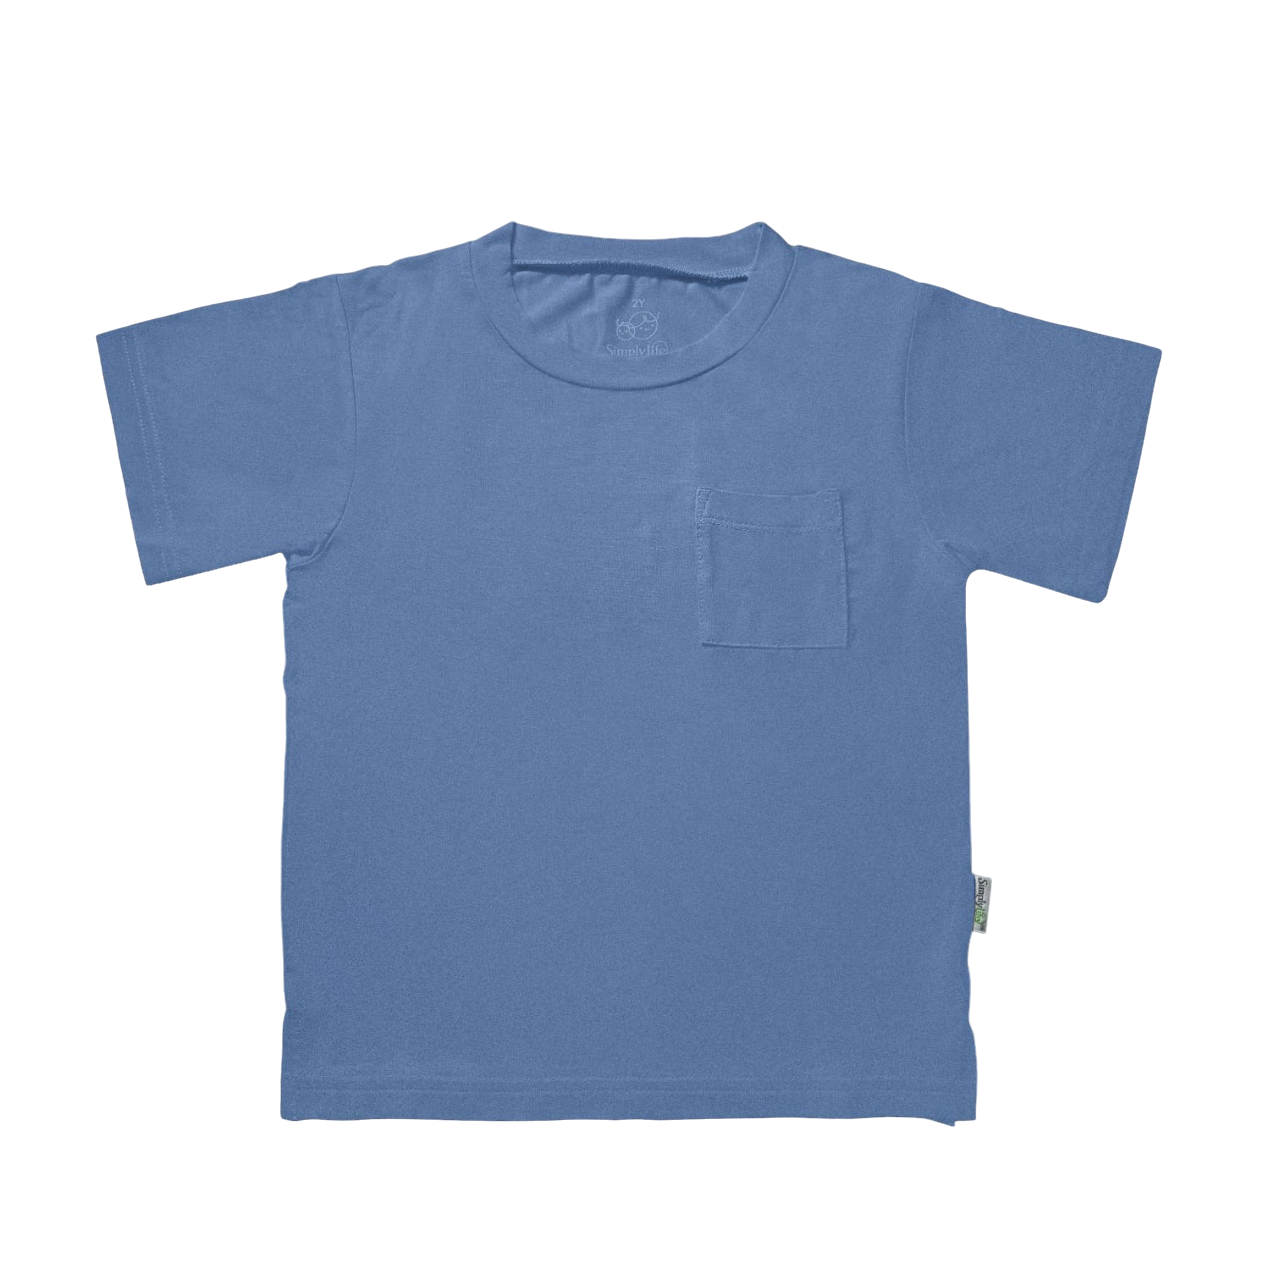 Kids Basic Tee with pocket (Slate Blue) - TENCEL™ Modal